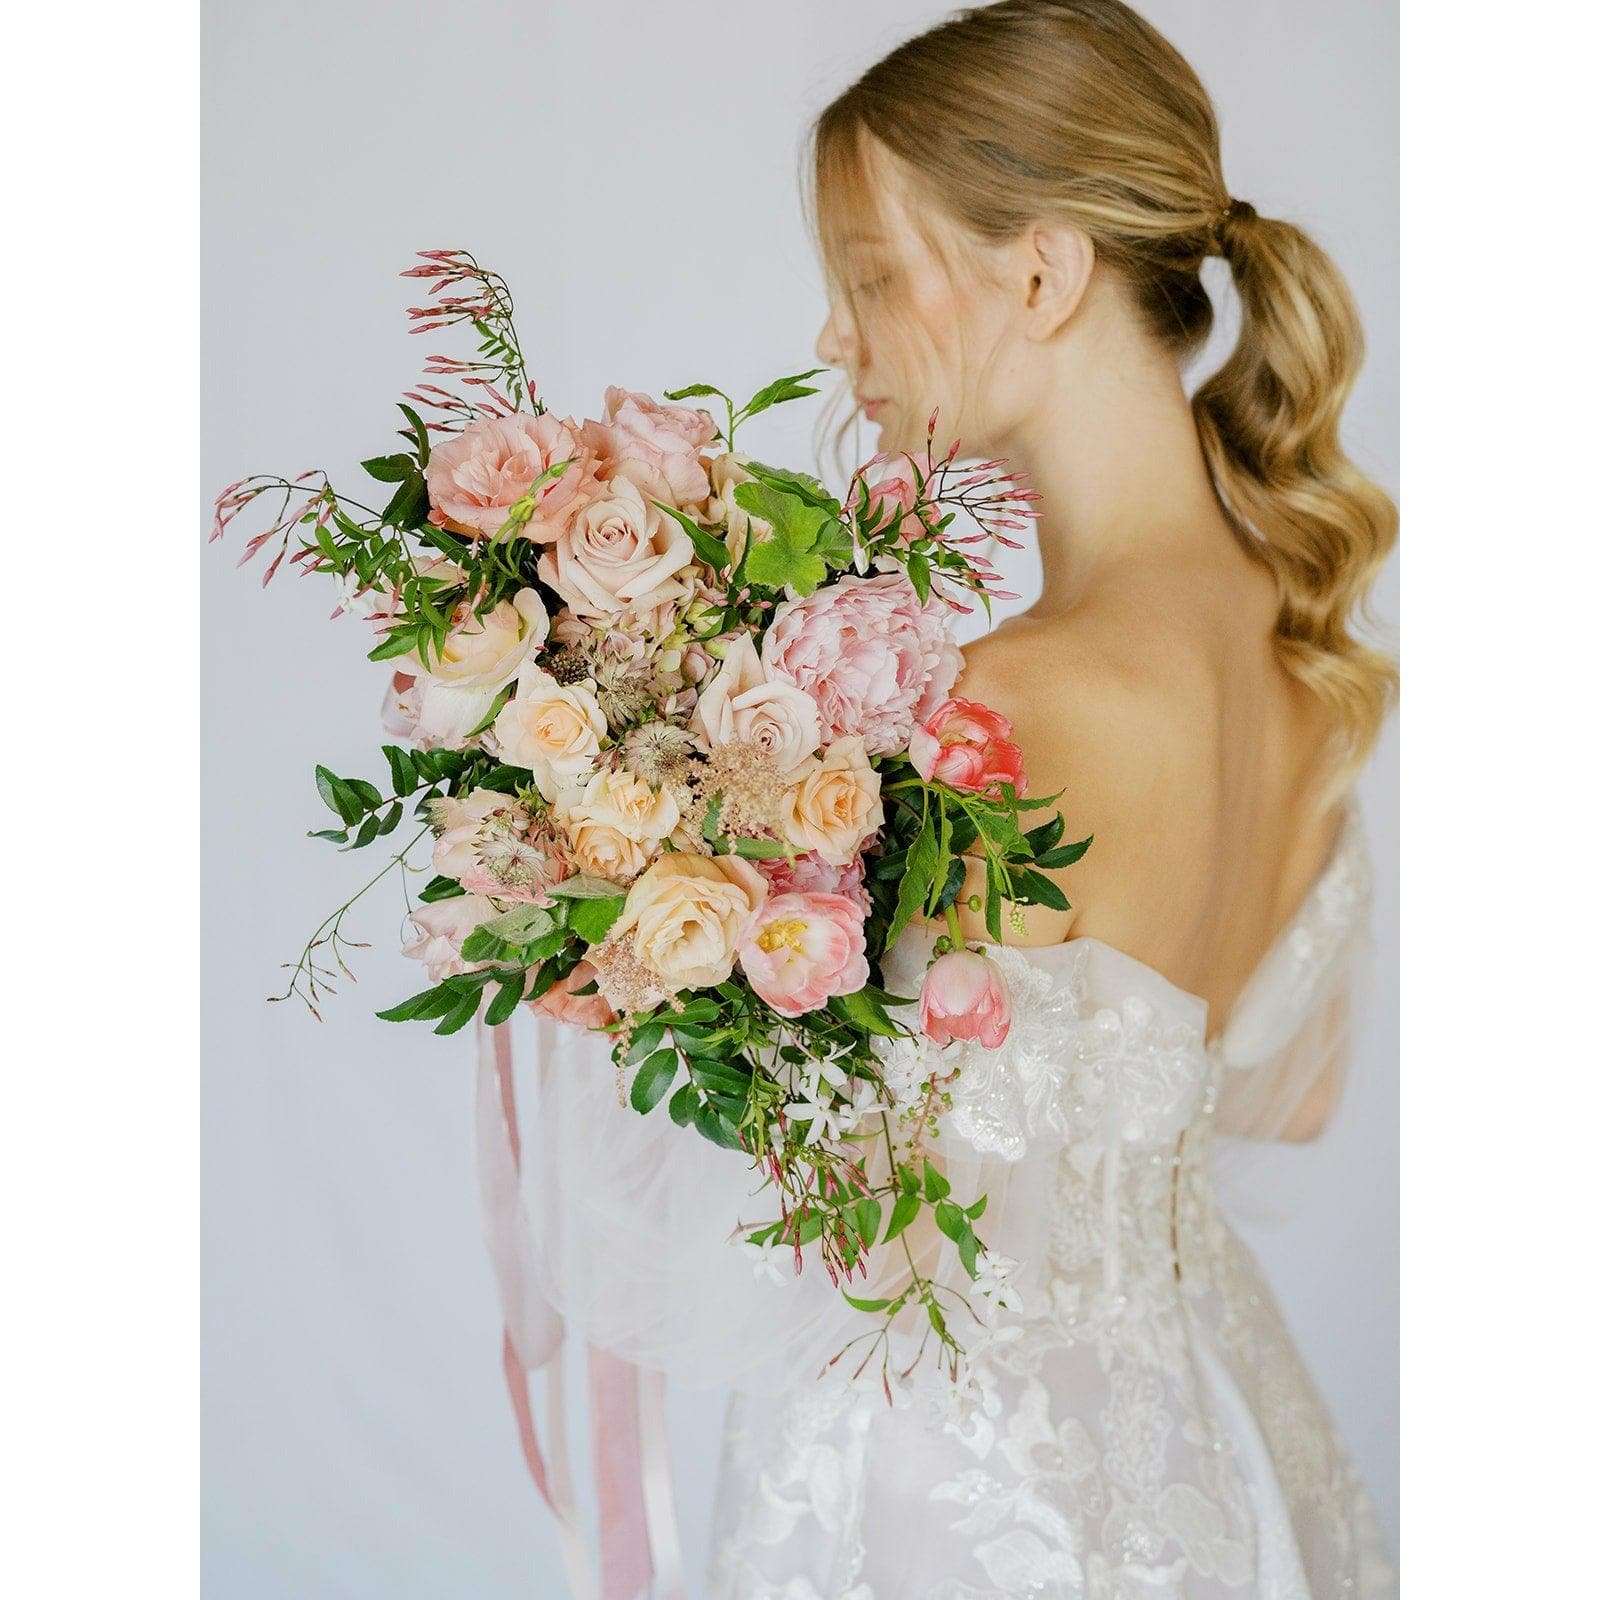 Blush A la Carte Bridal Bouquet - Green Fresh Florals + Plants